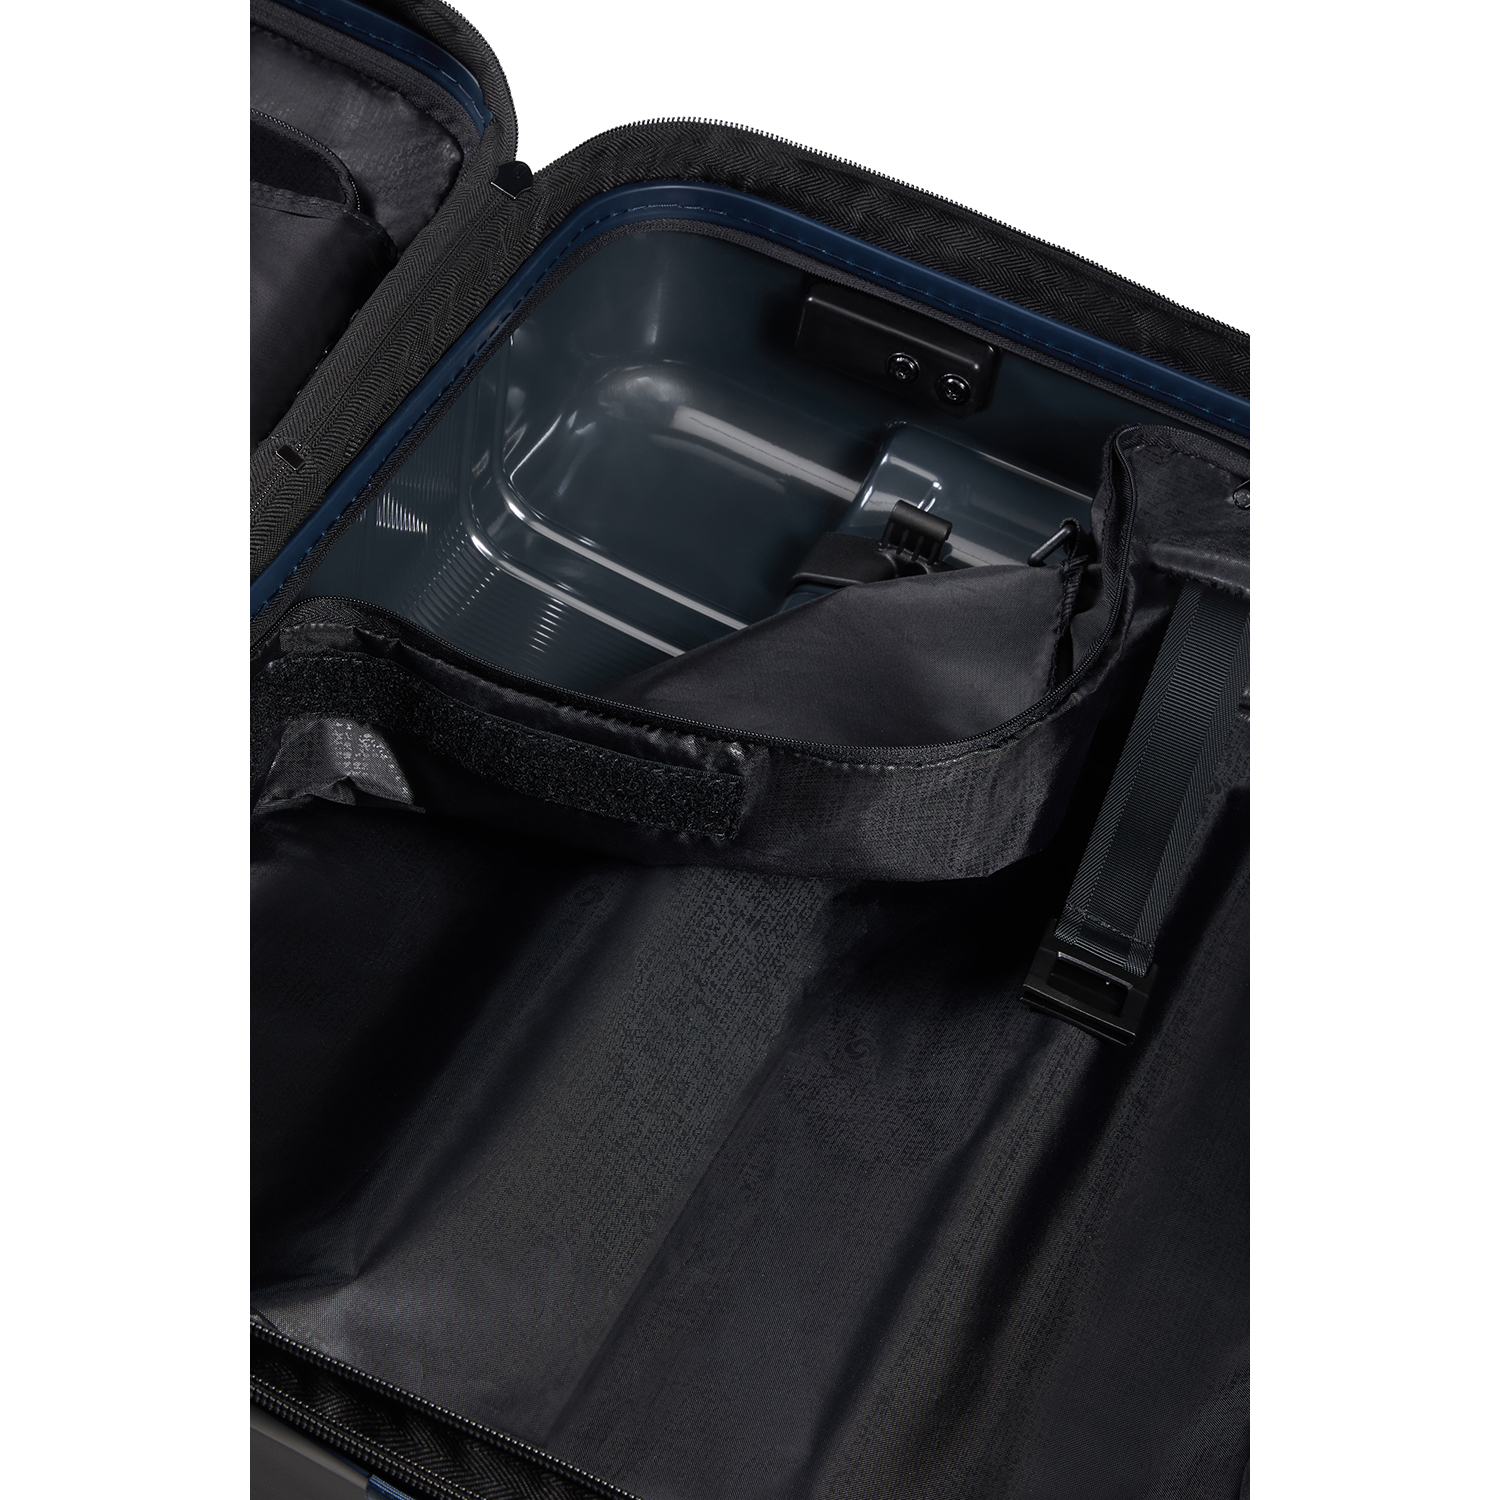 NEOPOD- 4 Tekerlekli Körüklü Kolay Erişim Kabin Boy Valiz 55cm SKH3-002-SF000*01